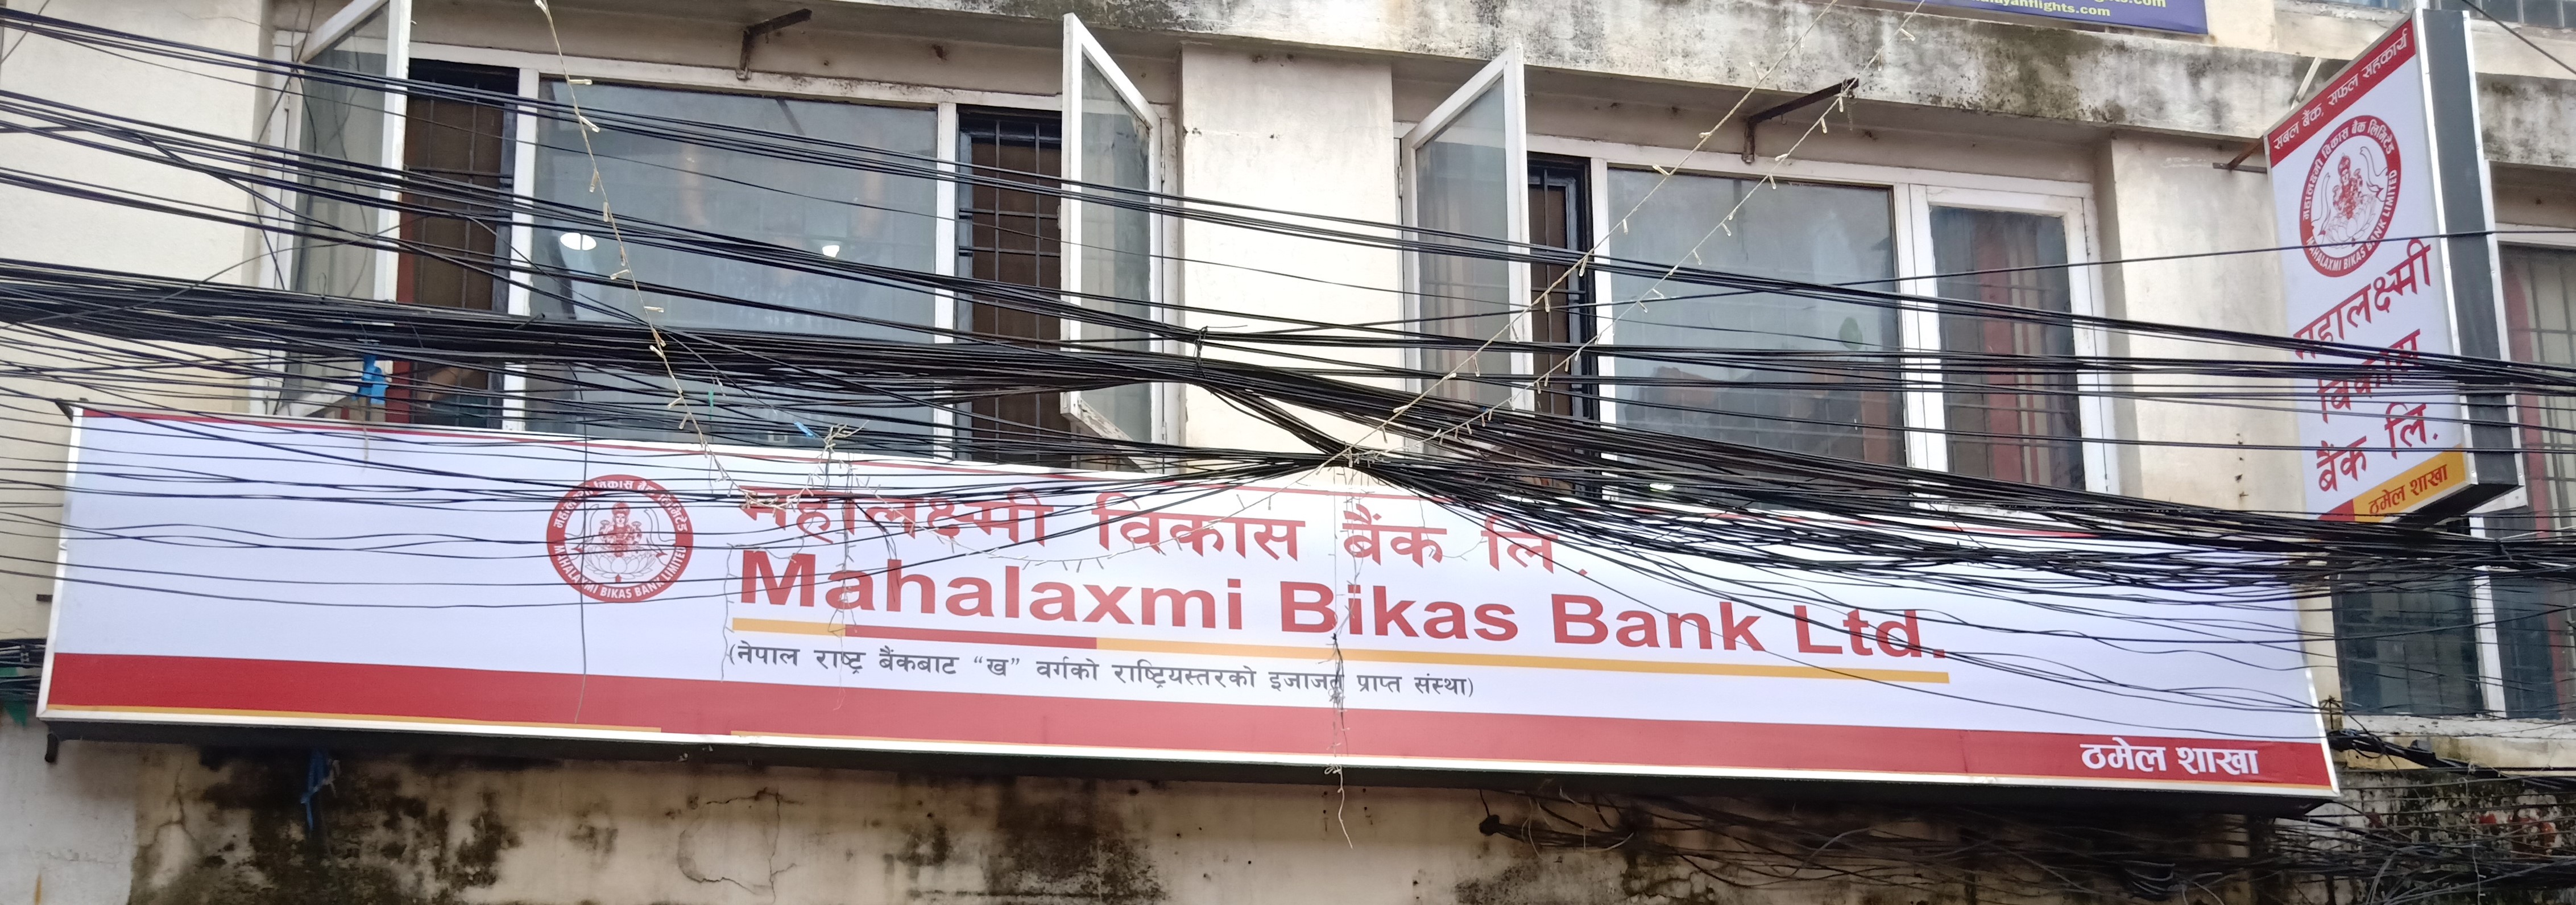 महालक्ष्मी विकास बैंकको नयाँ शाखा काठमाण्डौको ठमेलमा